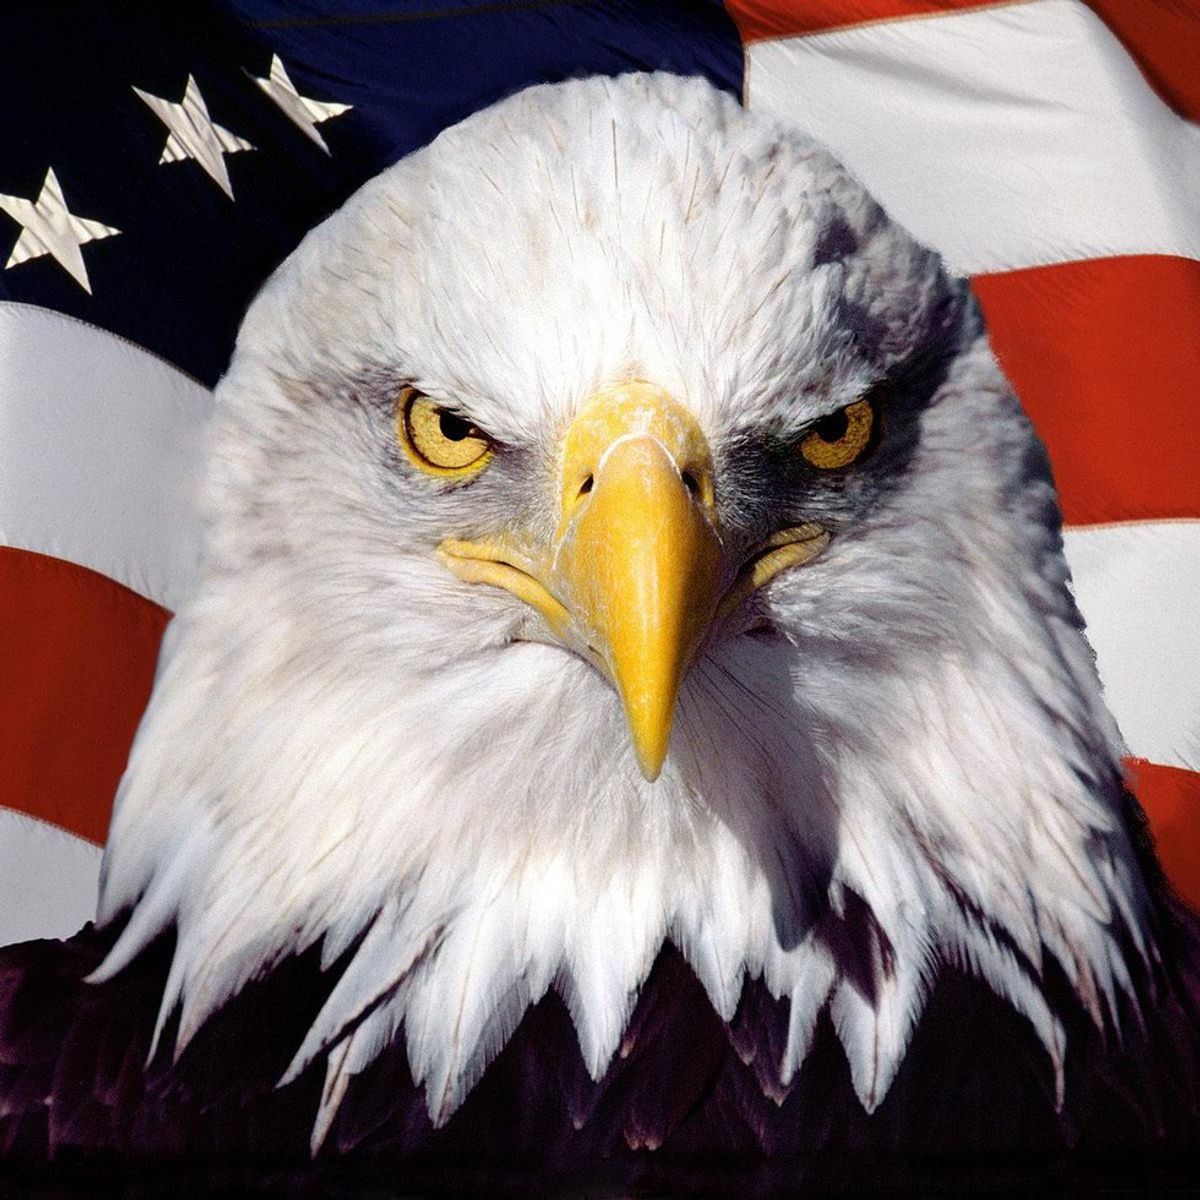 Proud To Be An American: The Patriotic Debate